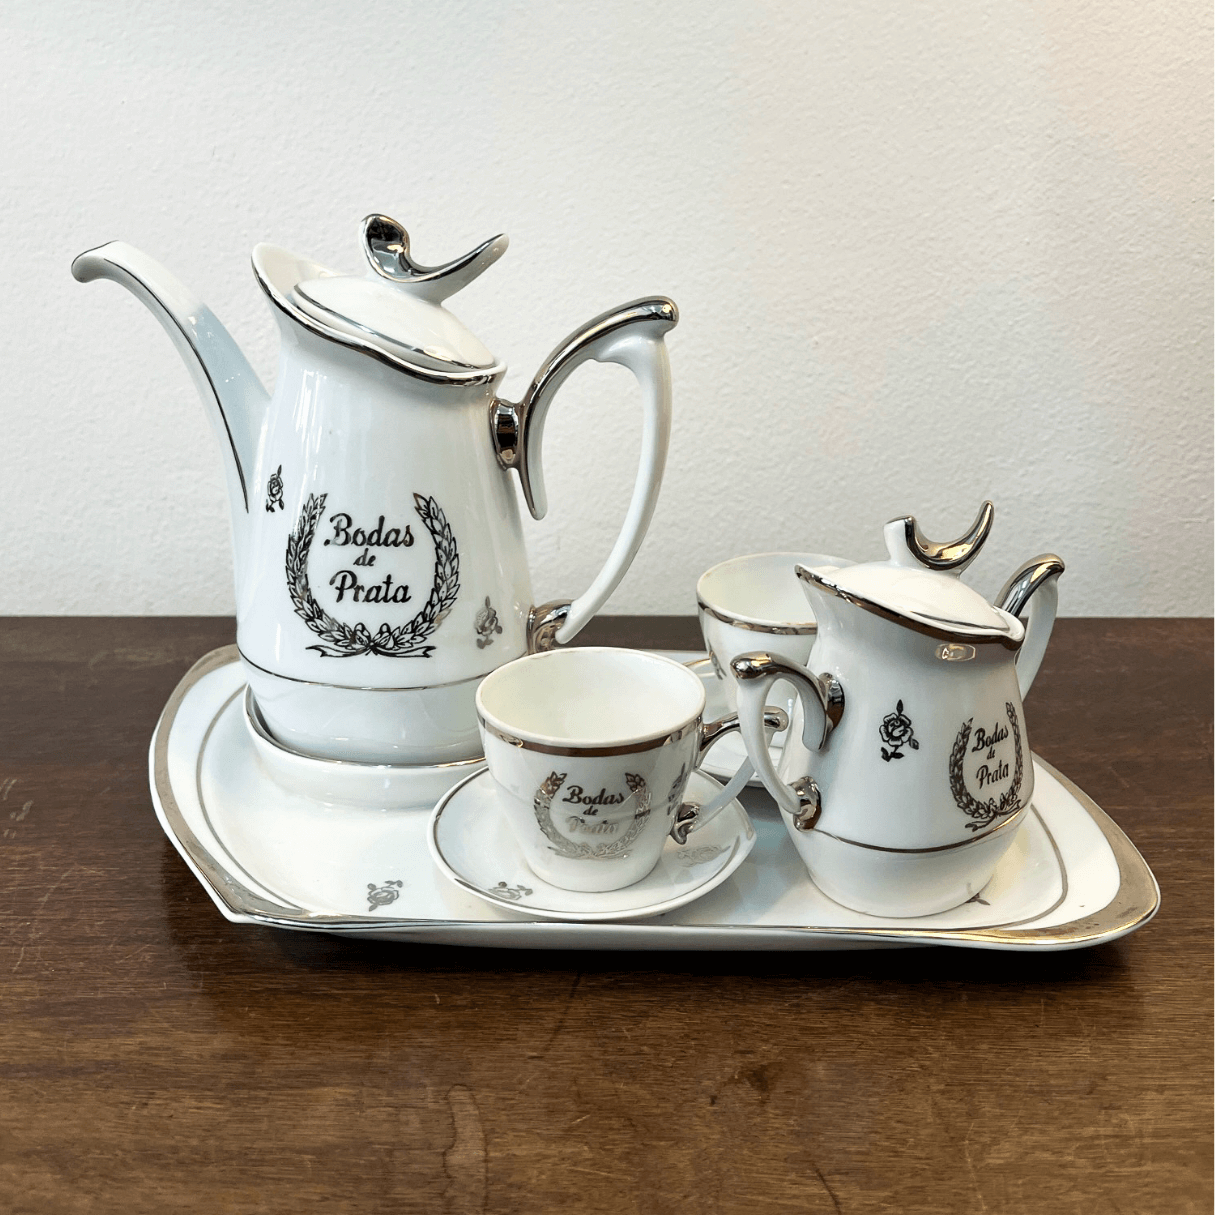 Jogo Café/Chá Bodas de Prata em Porcelana 4 peças